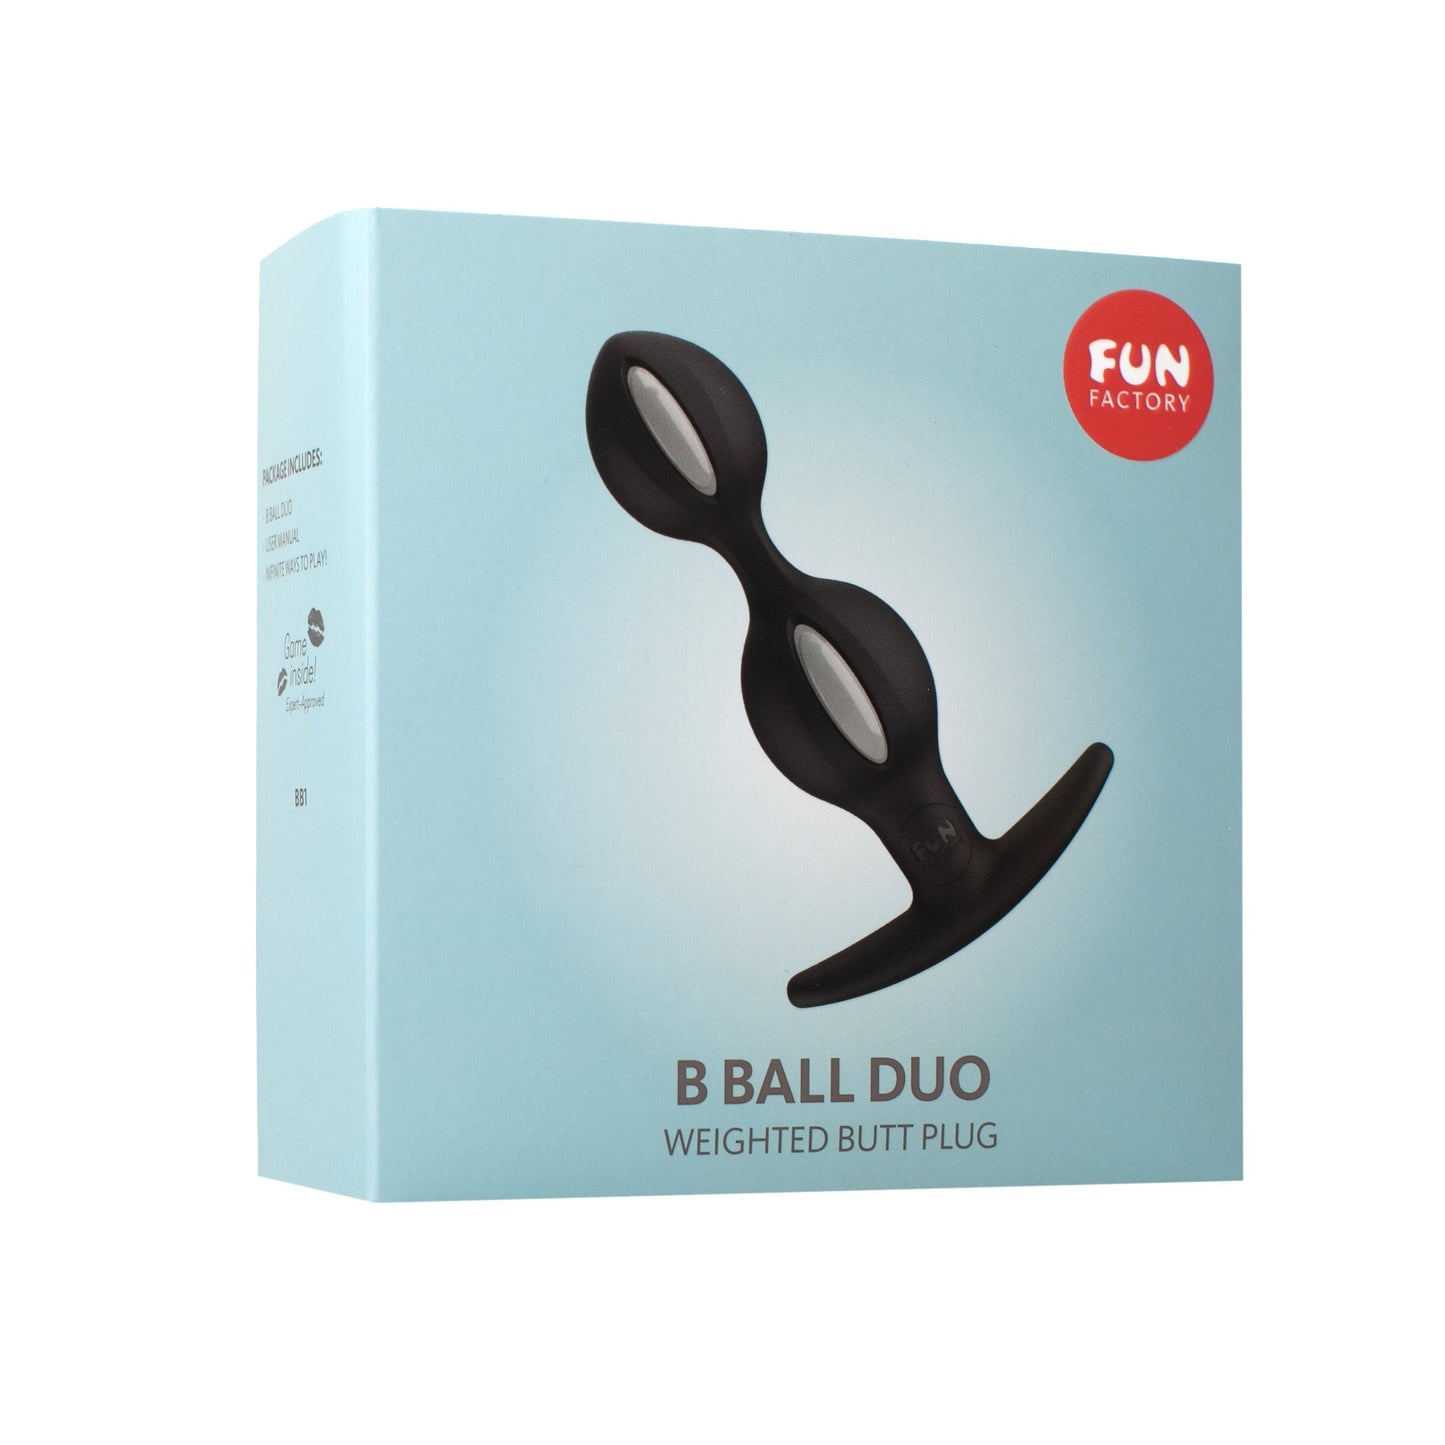 Fun Factory B Ball DUO Reactive Anal Plug - XOXTOYS